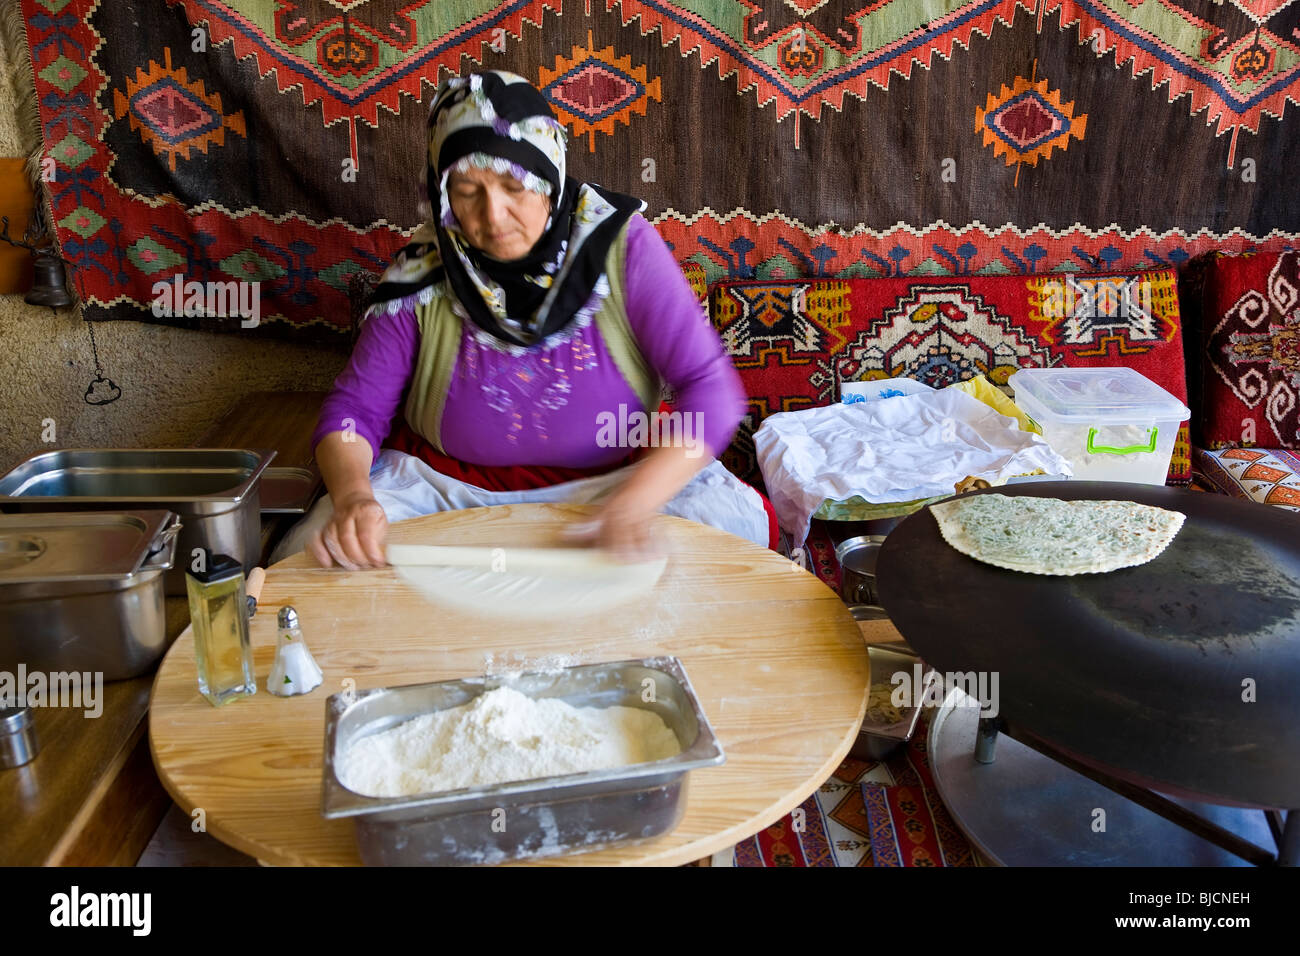 Donna fare Gozleme, sottile pane farcito con patate, spinaci, formaggio o carne tritata, Istanbul, Turchia Foto Stock